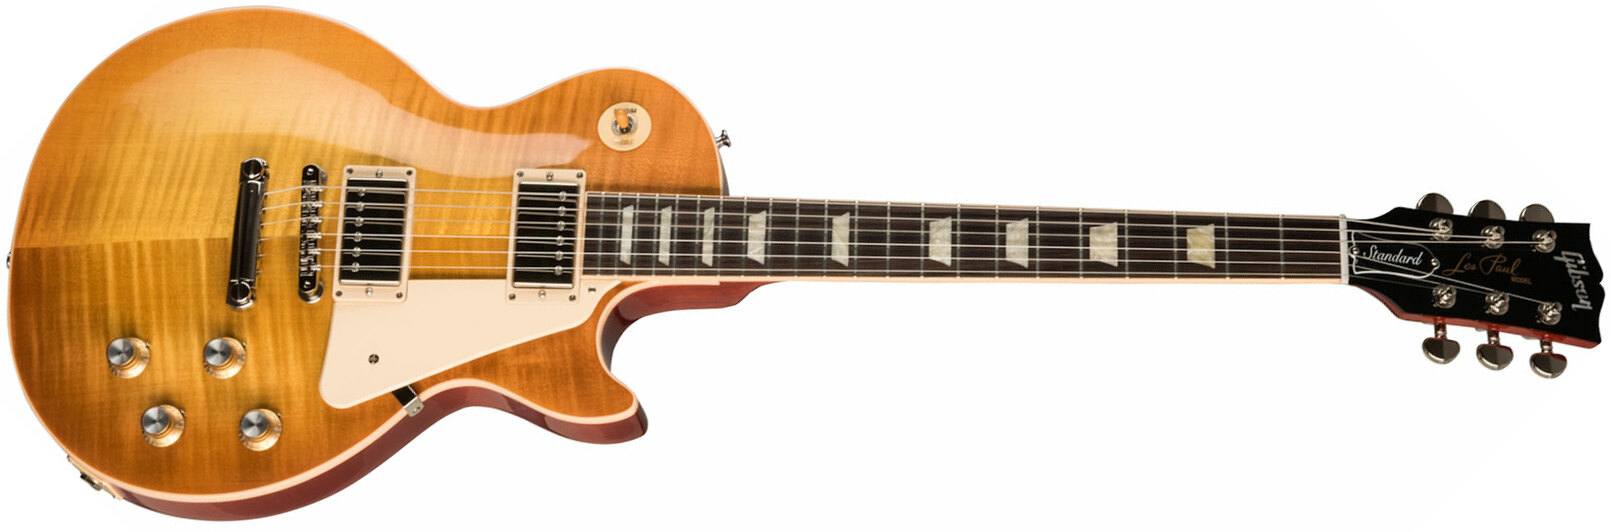 Gibson Les Paul Standard 60s Original 2h Ht Rw - Unburst - Single-Cut-E-Gitarre - Main picture